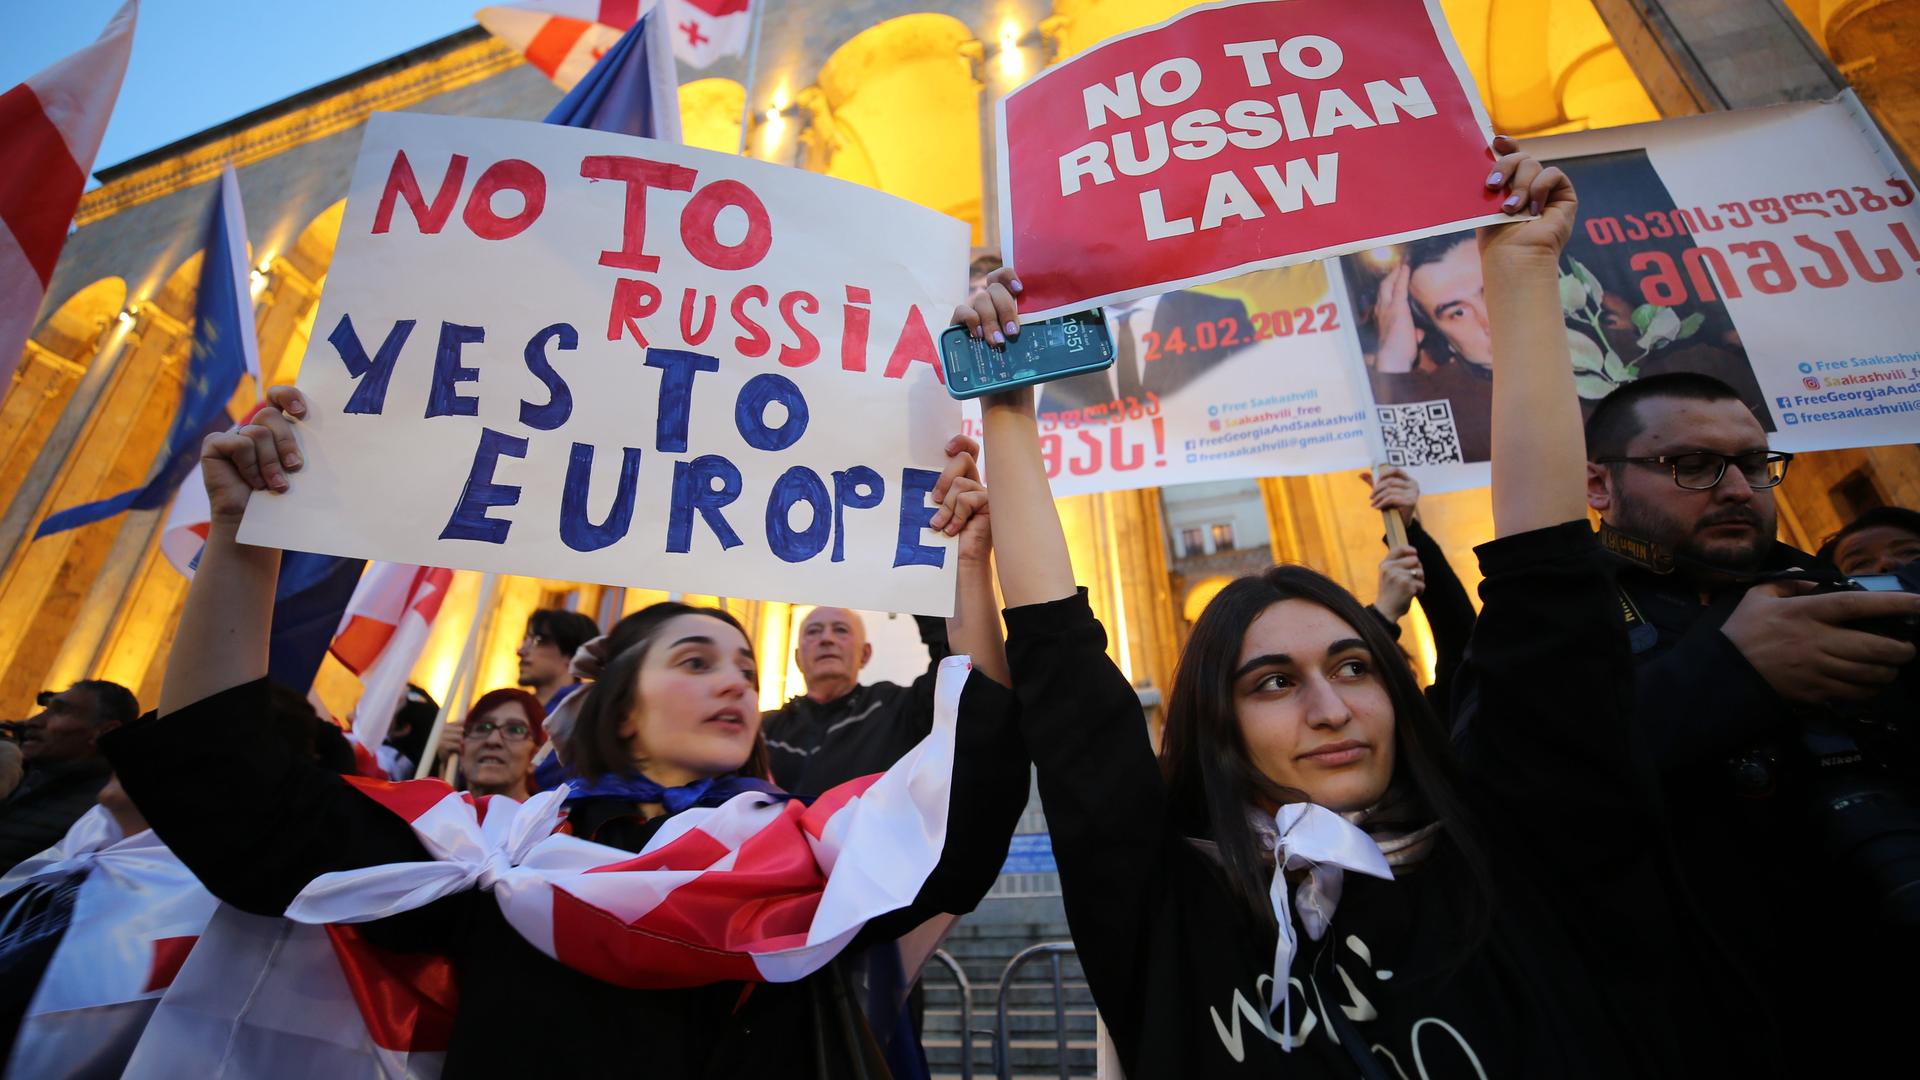 In Georgien halten zwei Teilnehmerinnen einer Demonstration Plakate in die Höhe. Auf einem steht "No to Russia, Yes to Europe", auf dem anderen steht "No to Russian Law".  